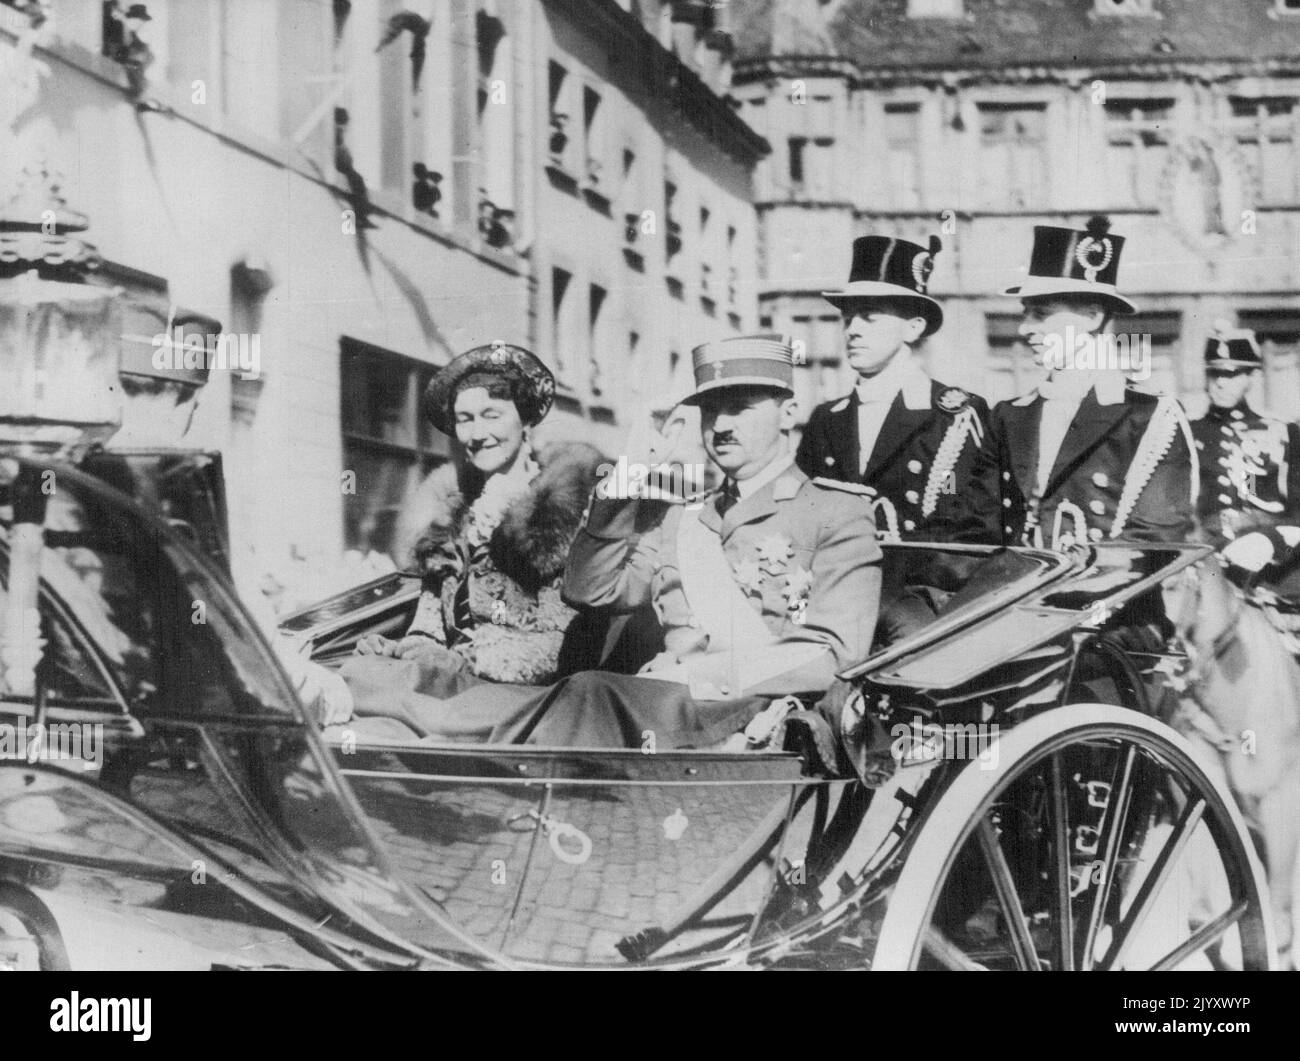 La famille grand-ducal du Luxembourg aux célébrations du centenaire. La Grande Duchesse Charlotte de Luxembourg en traversant le Luxembourg avec le prince Consort Felix (à droite) et le prince héritier Jean, fils de 18 ans de la Grande Duchesse (à gauche, de retour à la caméra) Ils se sont rendus à l'hôtel de ville pour une cérémonie à l'occasion de la célébration du centenaire de l'indépendance du Luxembourg. 24 avril 1939. Banque D'Images